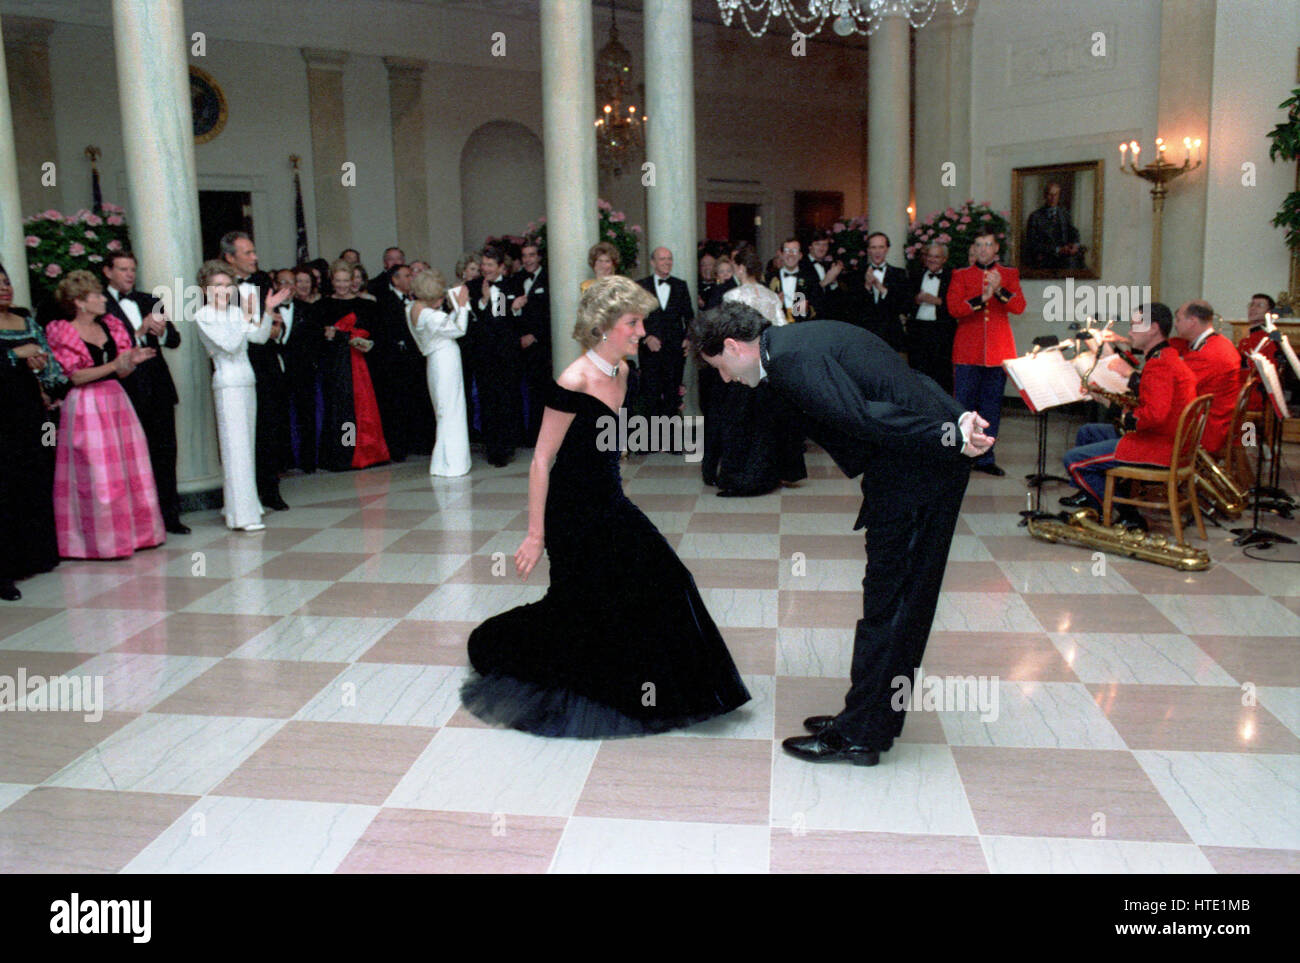 La princesse Diana danse avec John Travolta dans le Hall de la Maison Blanche à Washington, D.C lors d'un dîner de prince Charles et la Princesse Diana du Royaume-Uni le 9 novembre 1985 Obligatoire Banque D'Images